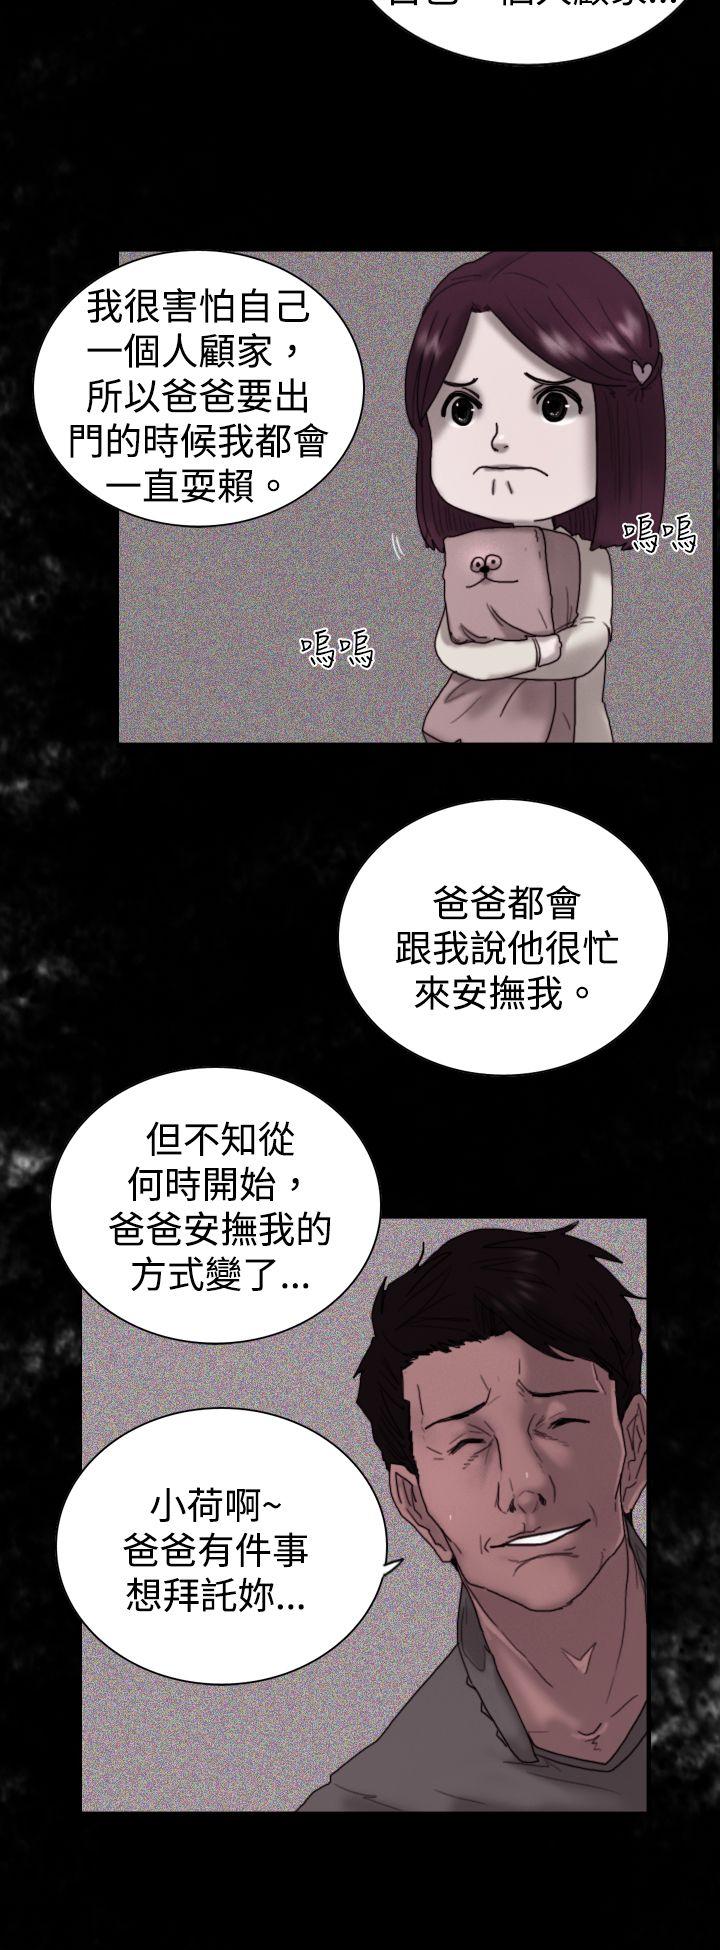 韩国污漫画 覺醒 第8话爸爸的谜语 12